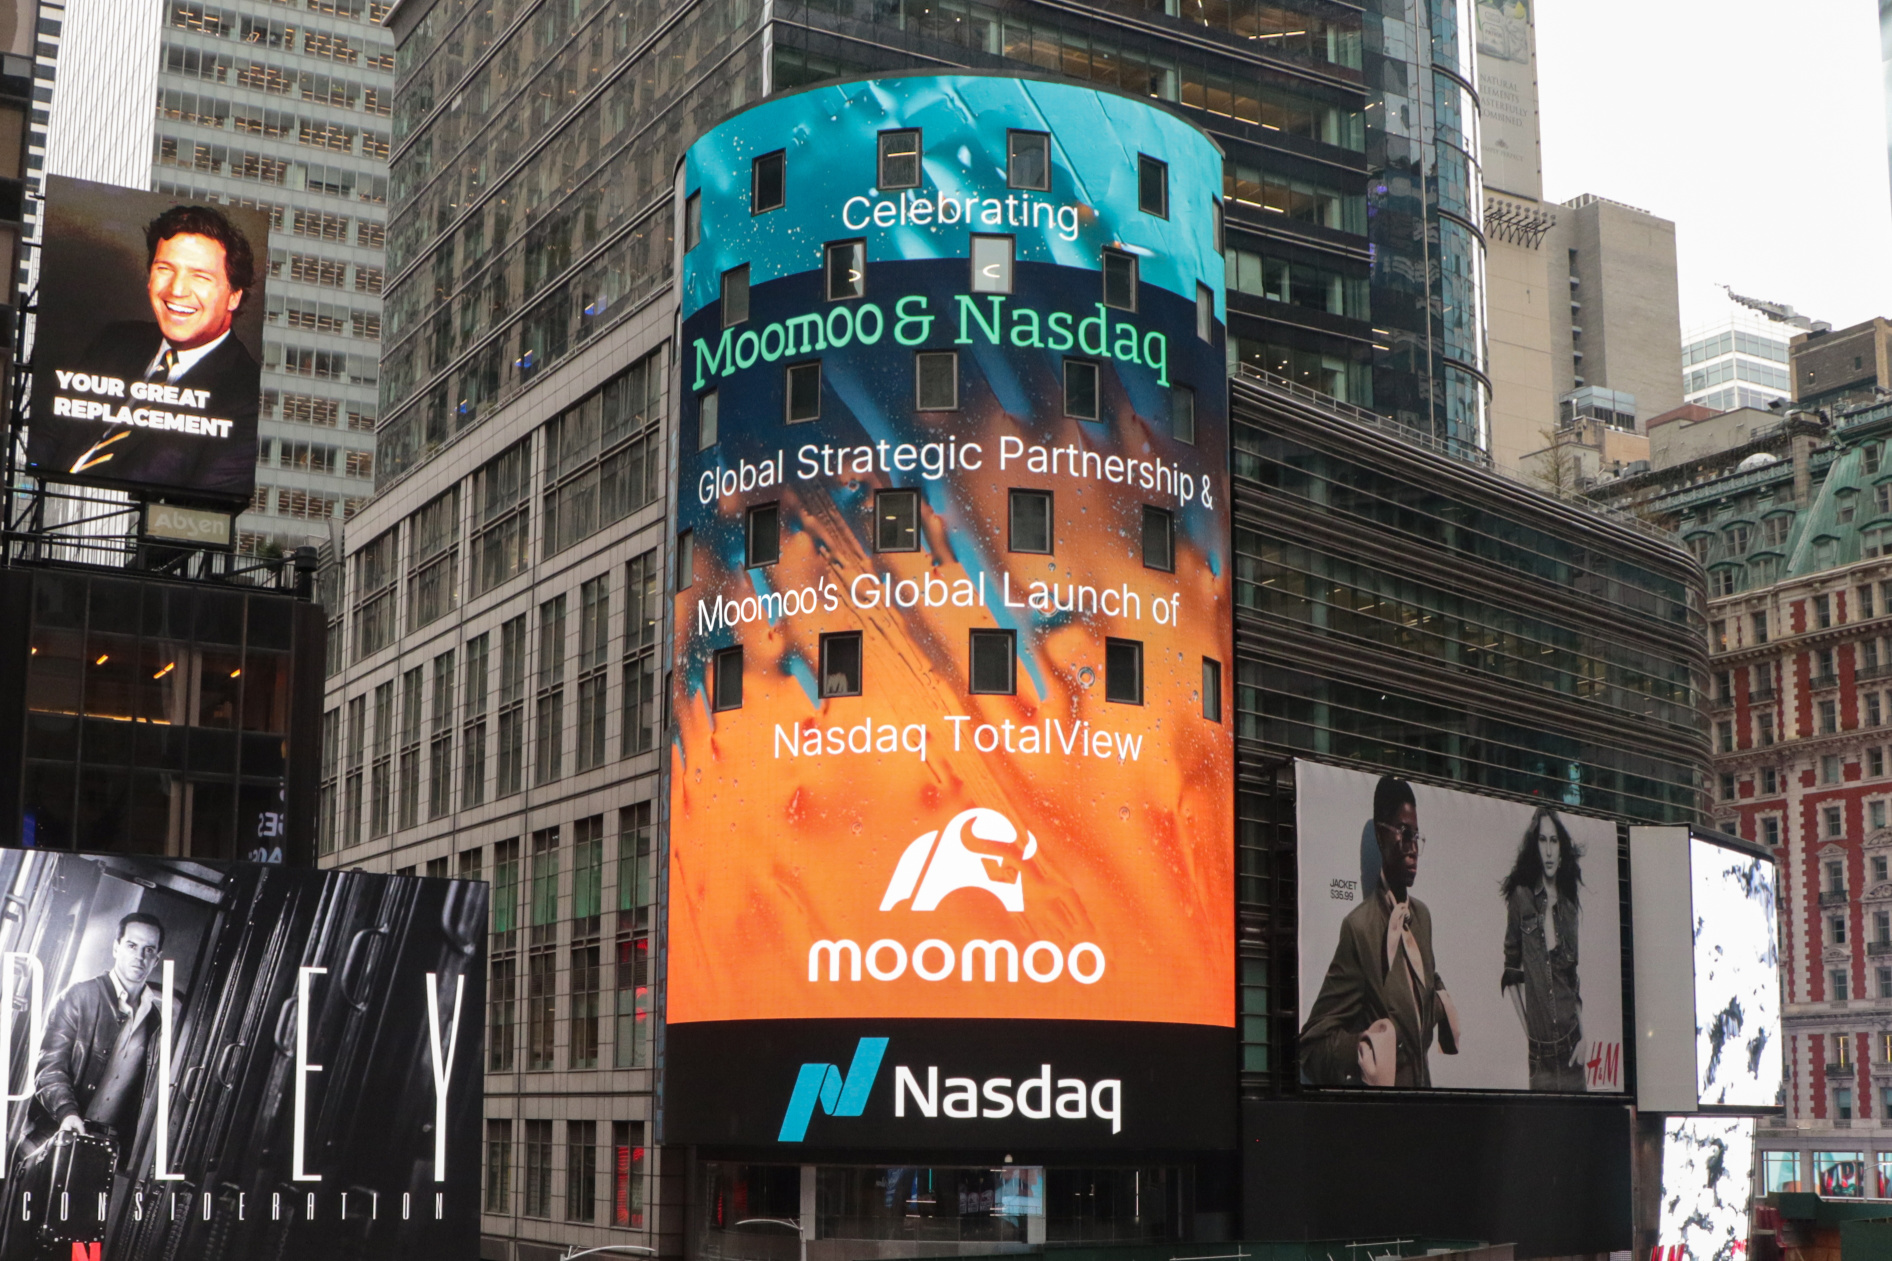 Moomoo和Nasdaq标志着全球战略合作6周年，重申了赋予投资者权力的承诺